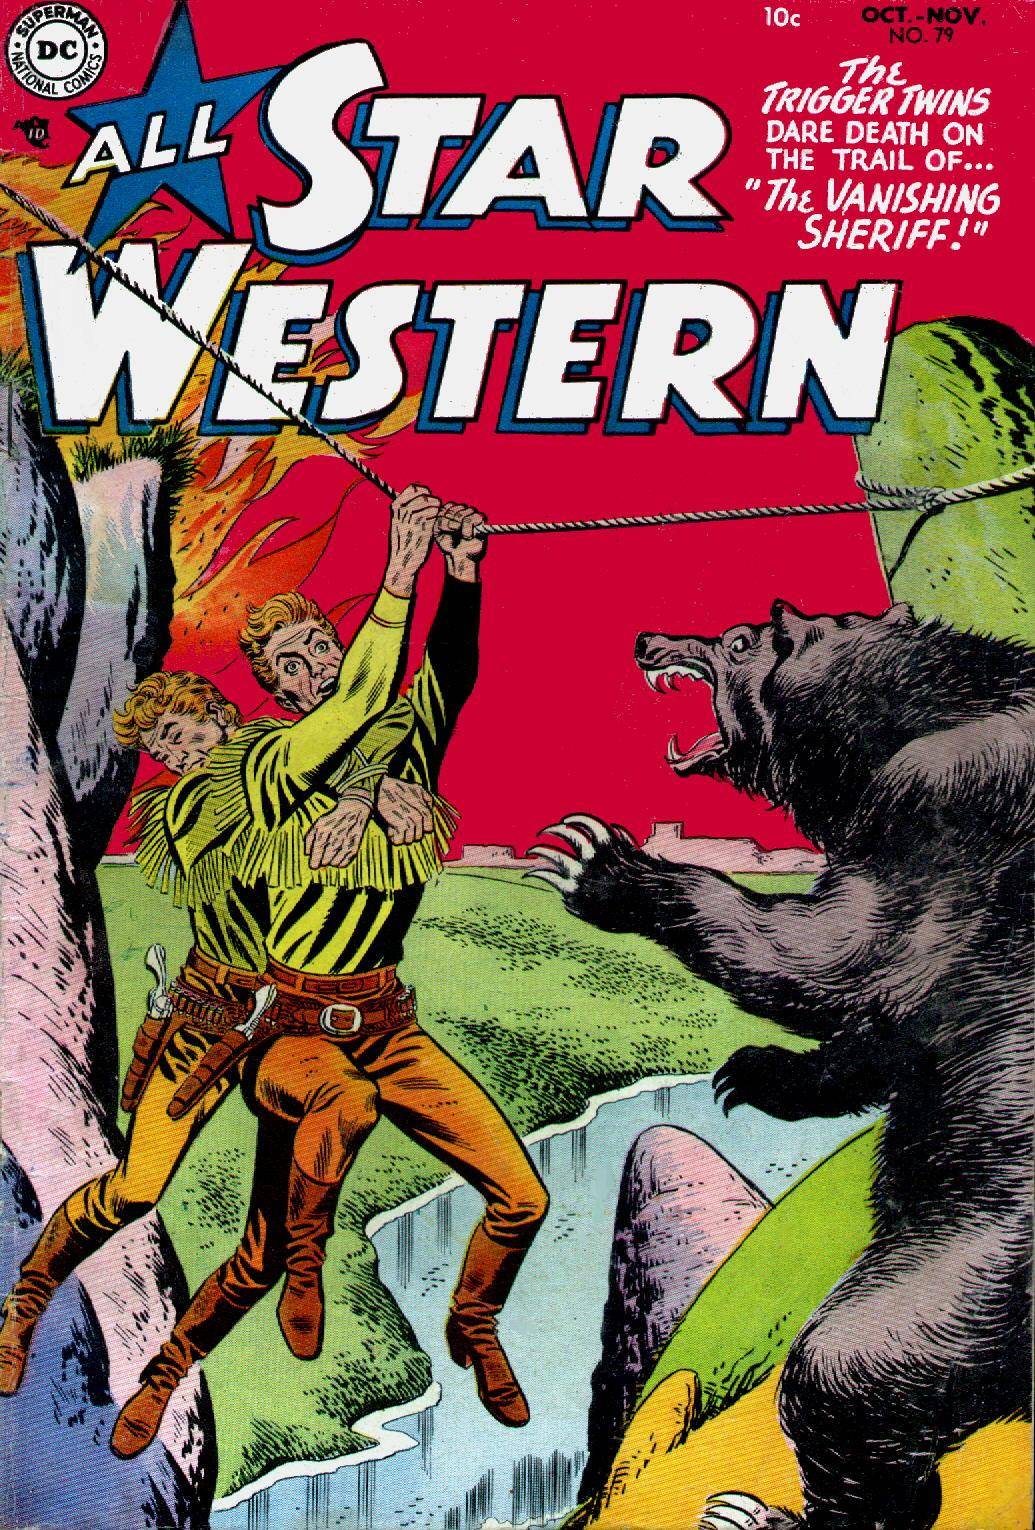 Star Western v1 079 1954